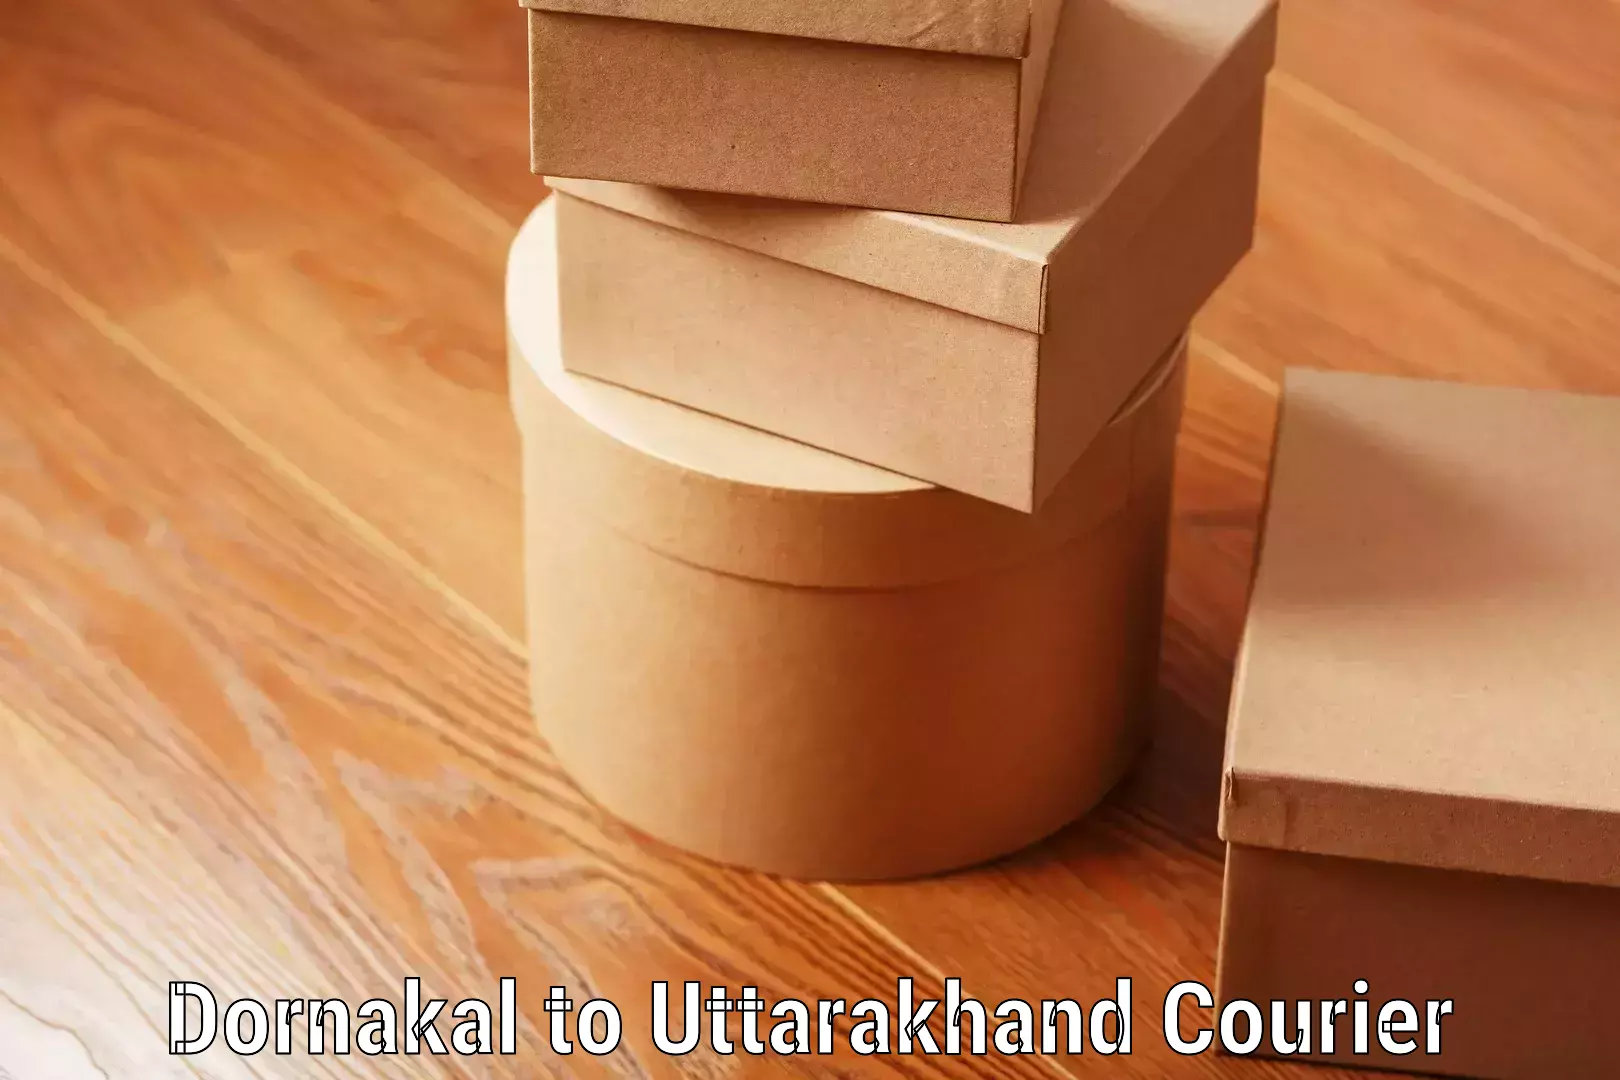 Baggage delivery scheduling Dornakal to Uttarkashi